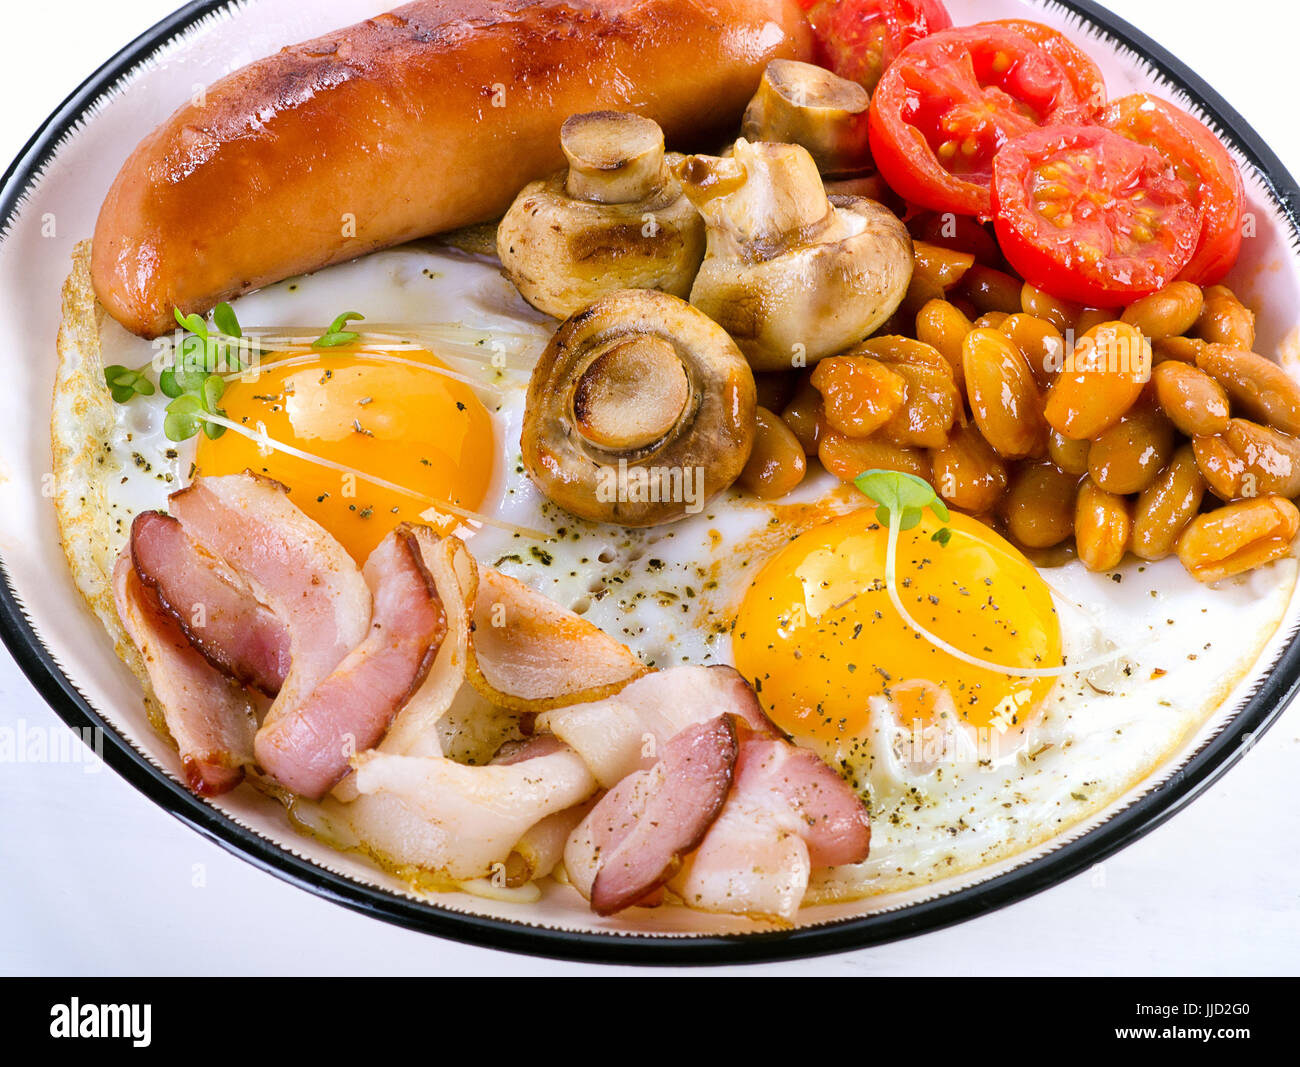 Prima colazione Inglese con uovo fritto, fagioli, pomodori, funghi e pancetta e salsiccia sulla piastra bianca Foto Stock